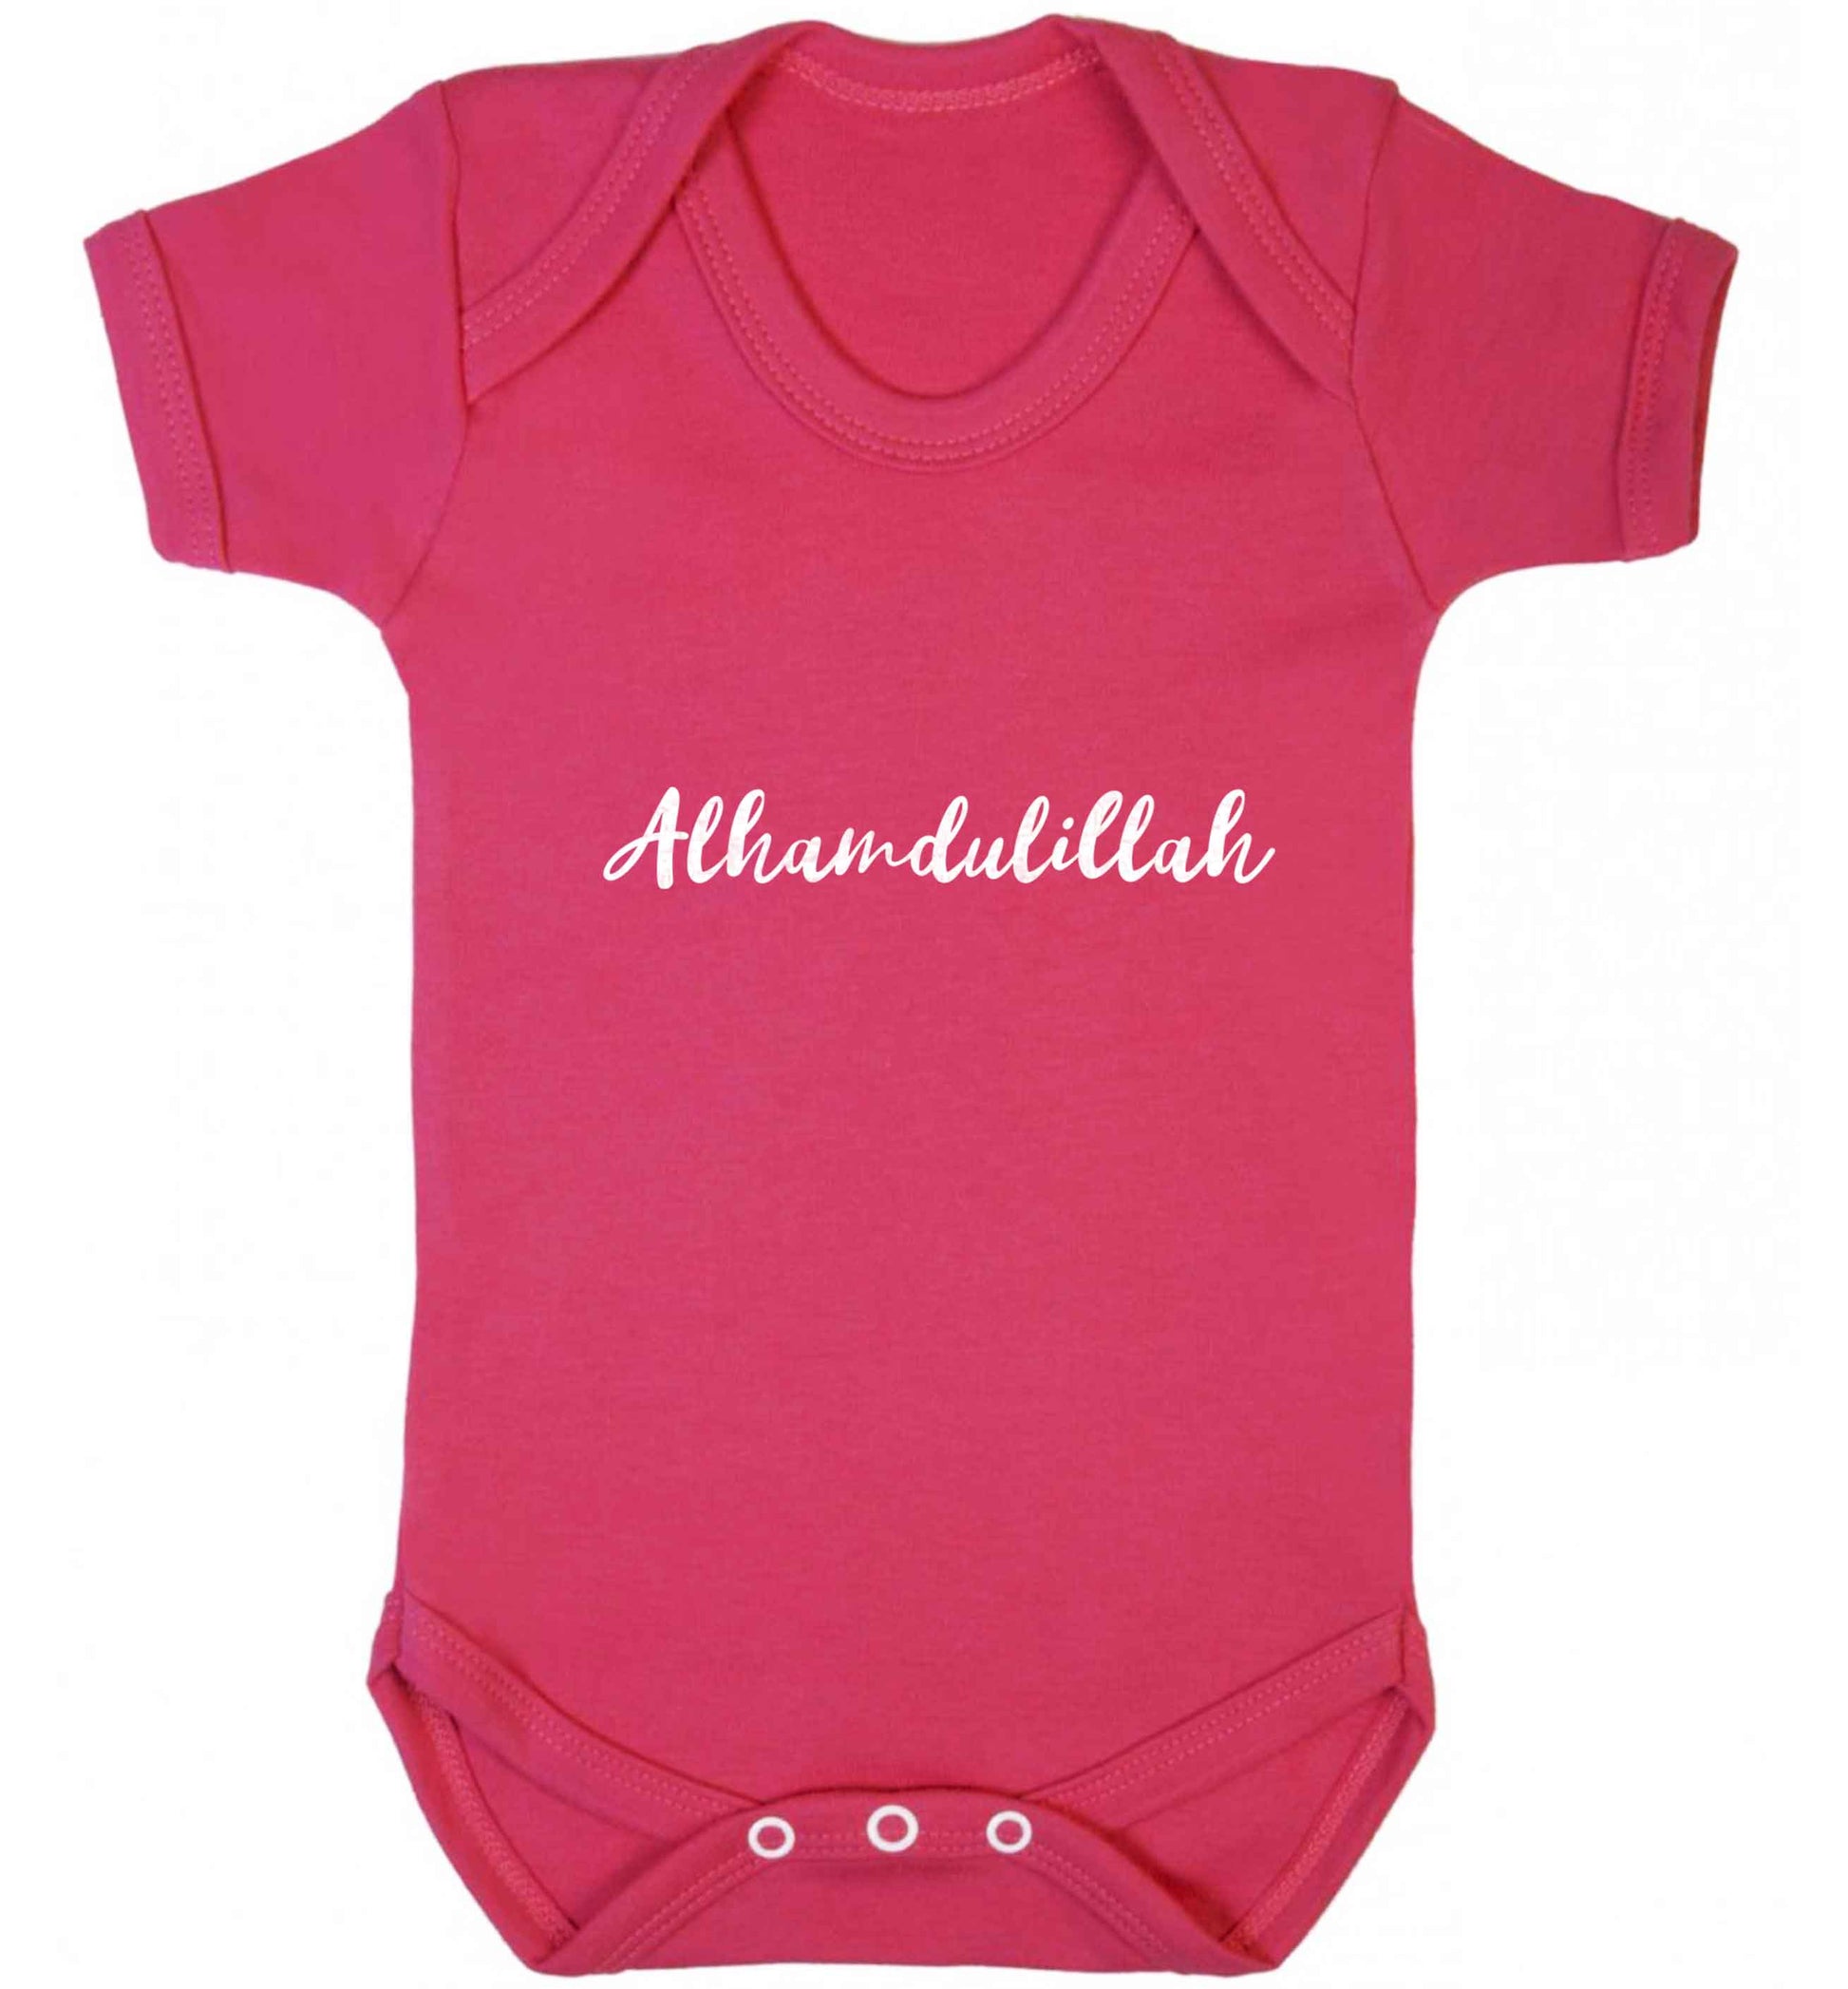 alhamdulillah baby vest dark pink 18-24 months